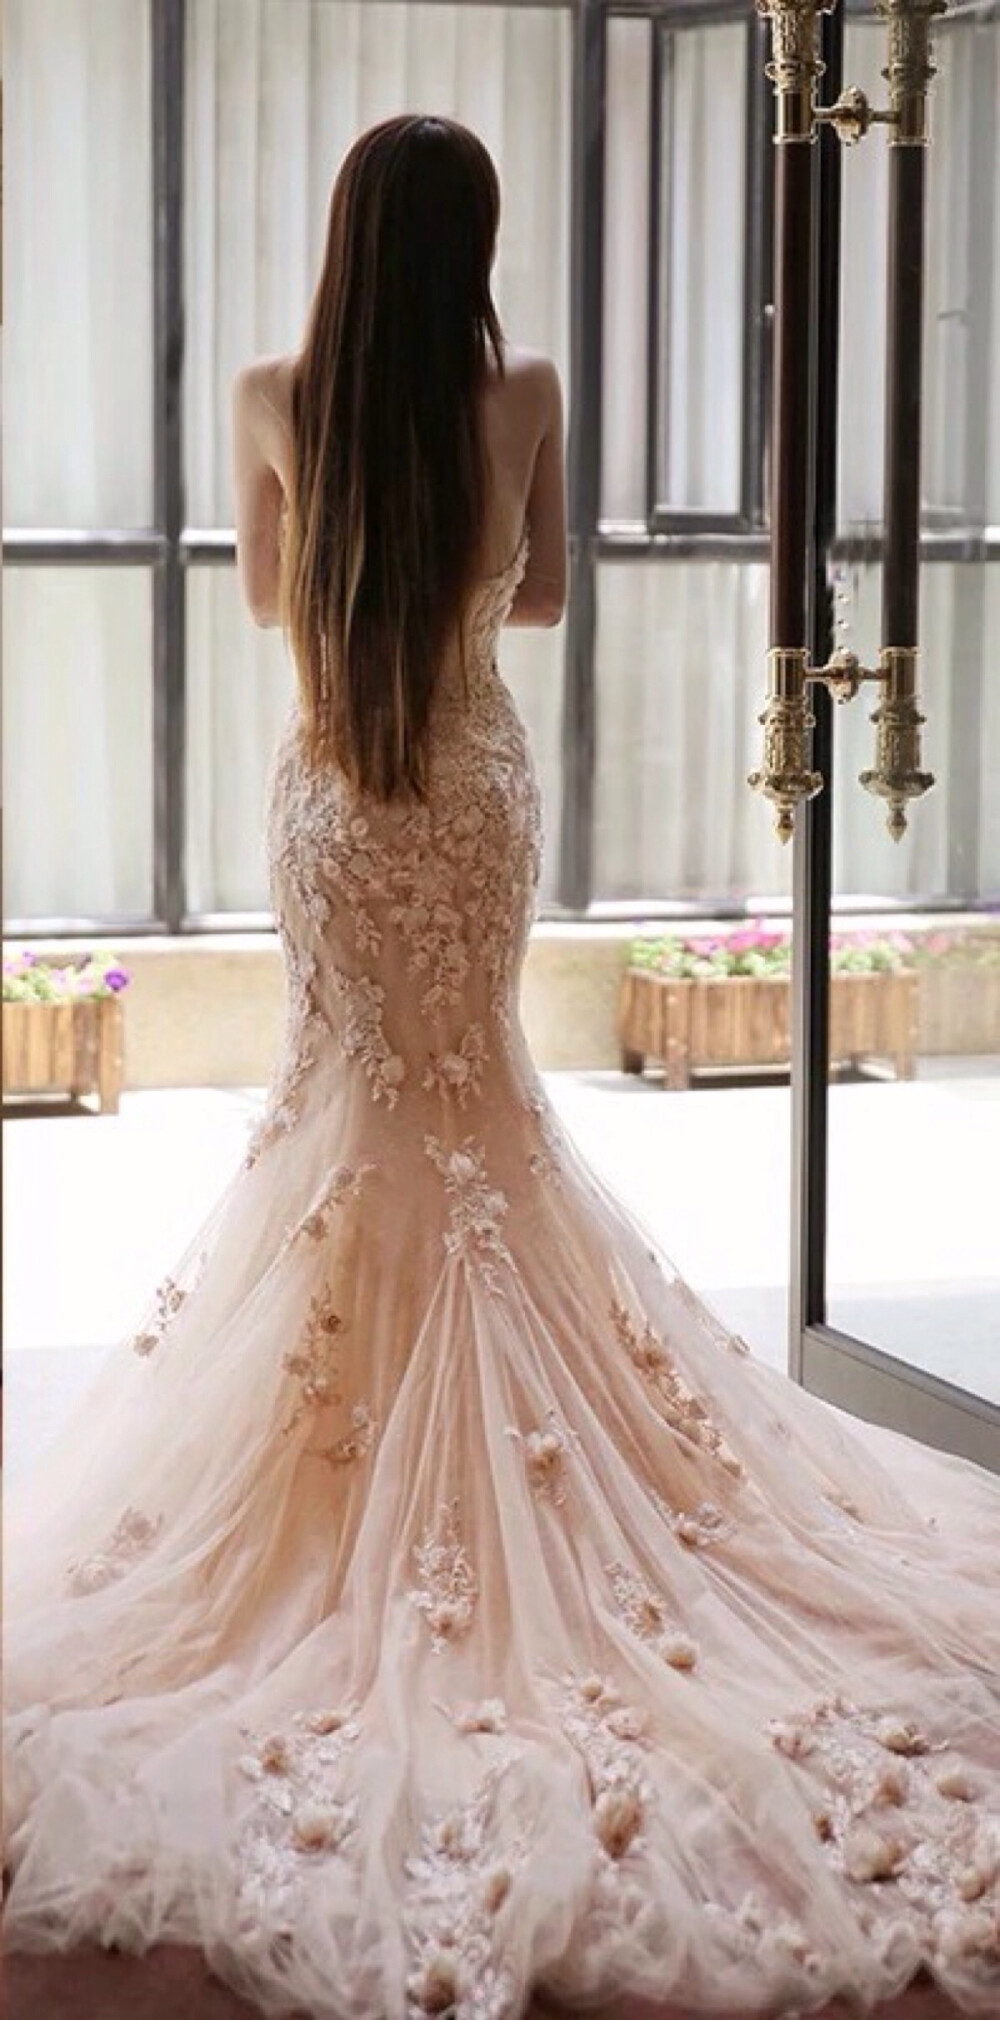 唯美婚纱 大气 性感 露出美美的背部,需要的不仅是身材要好,背部的